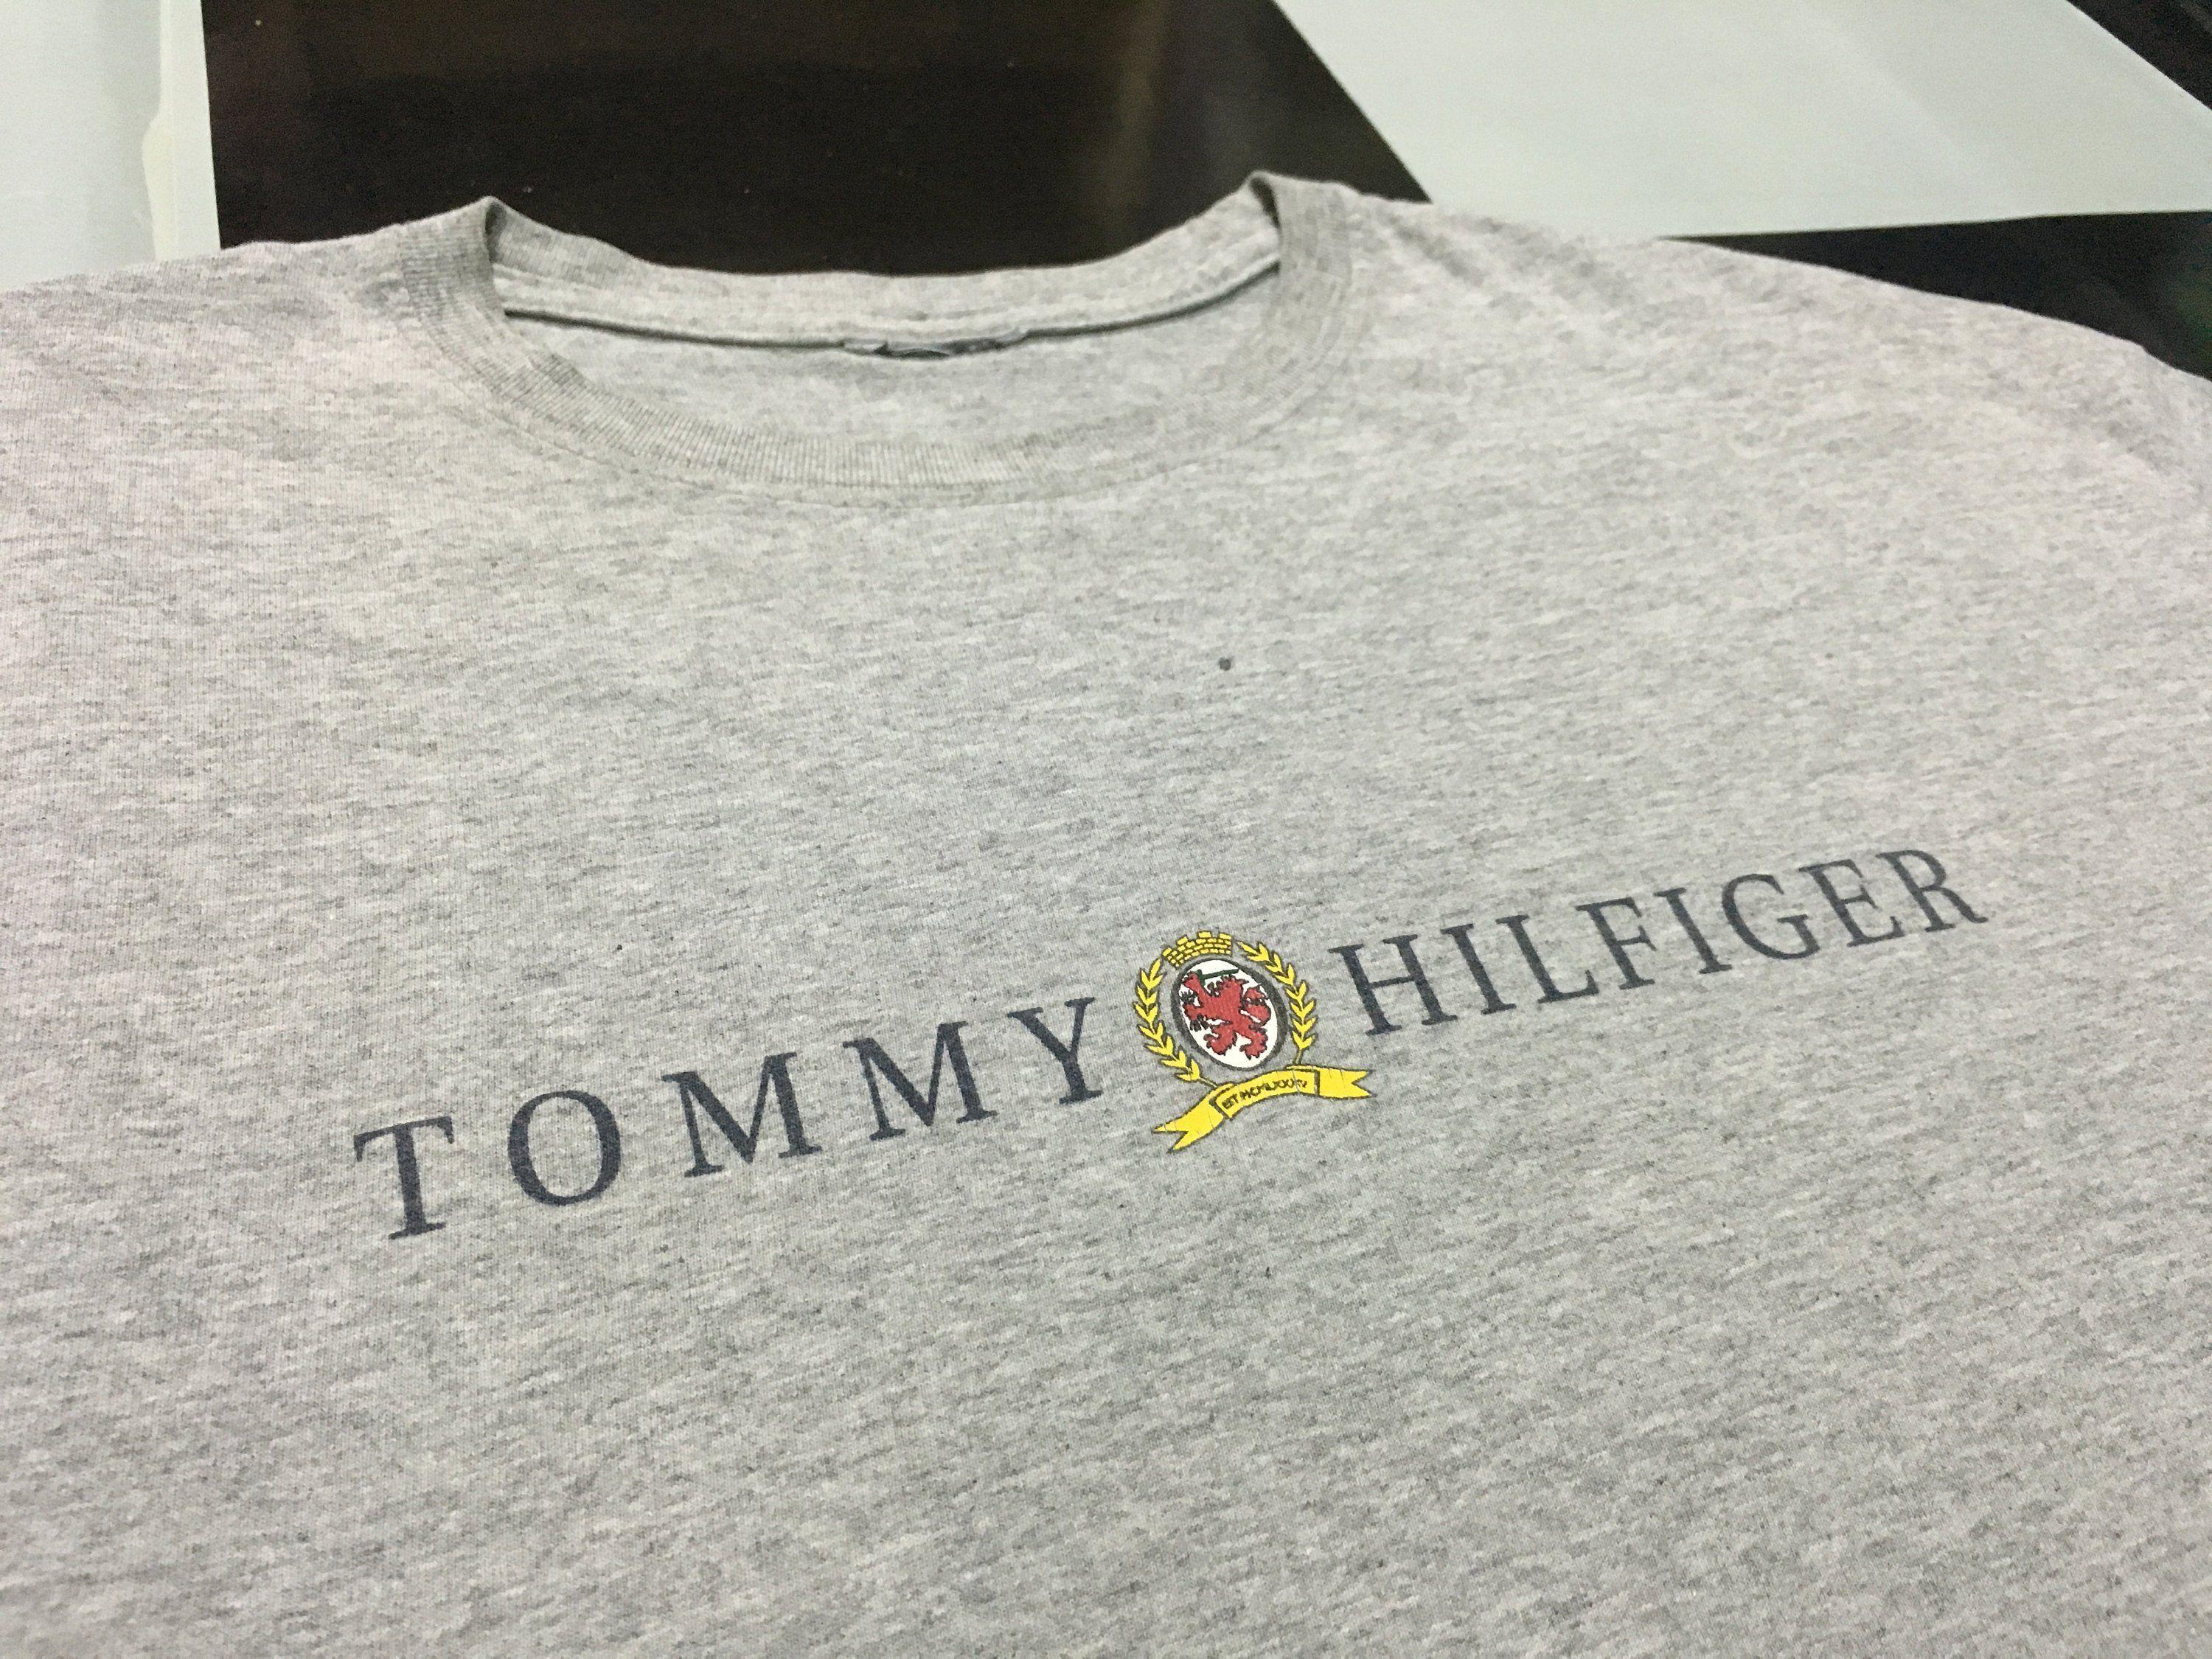 Tommy Hilfiger Lion Logo - Vintage Tommy hilfiger t shirt spell out logo lion crest Gray Size L